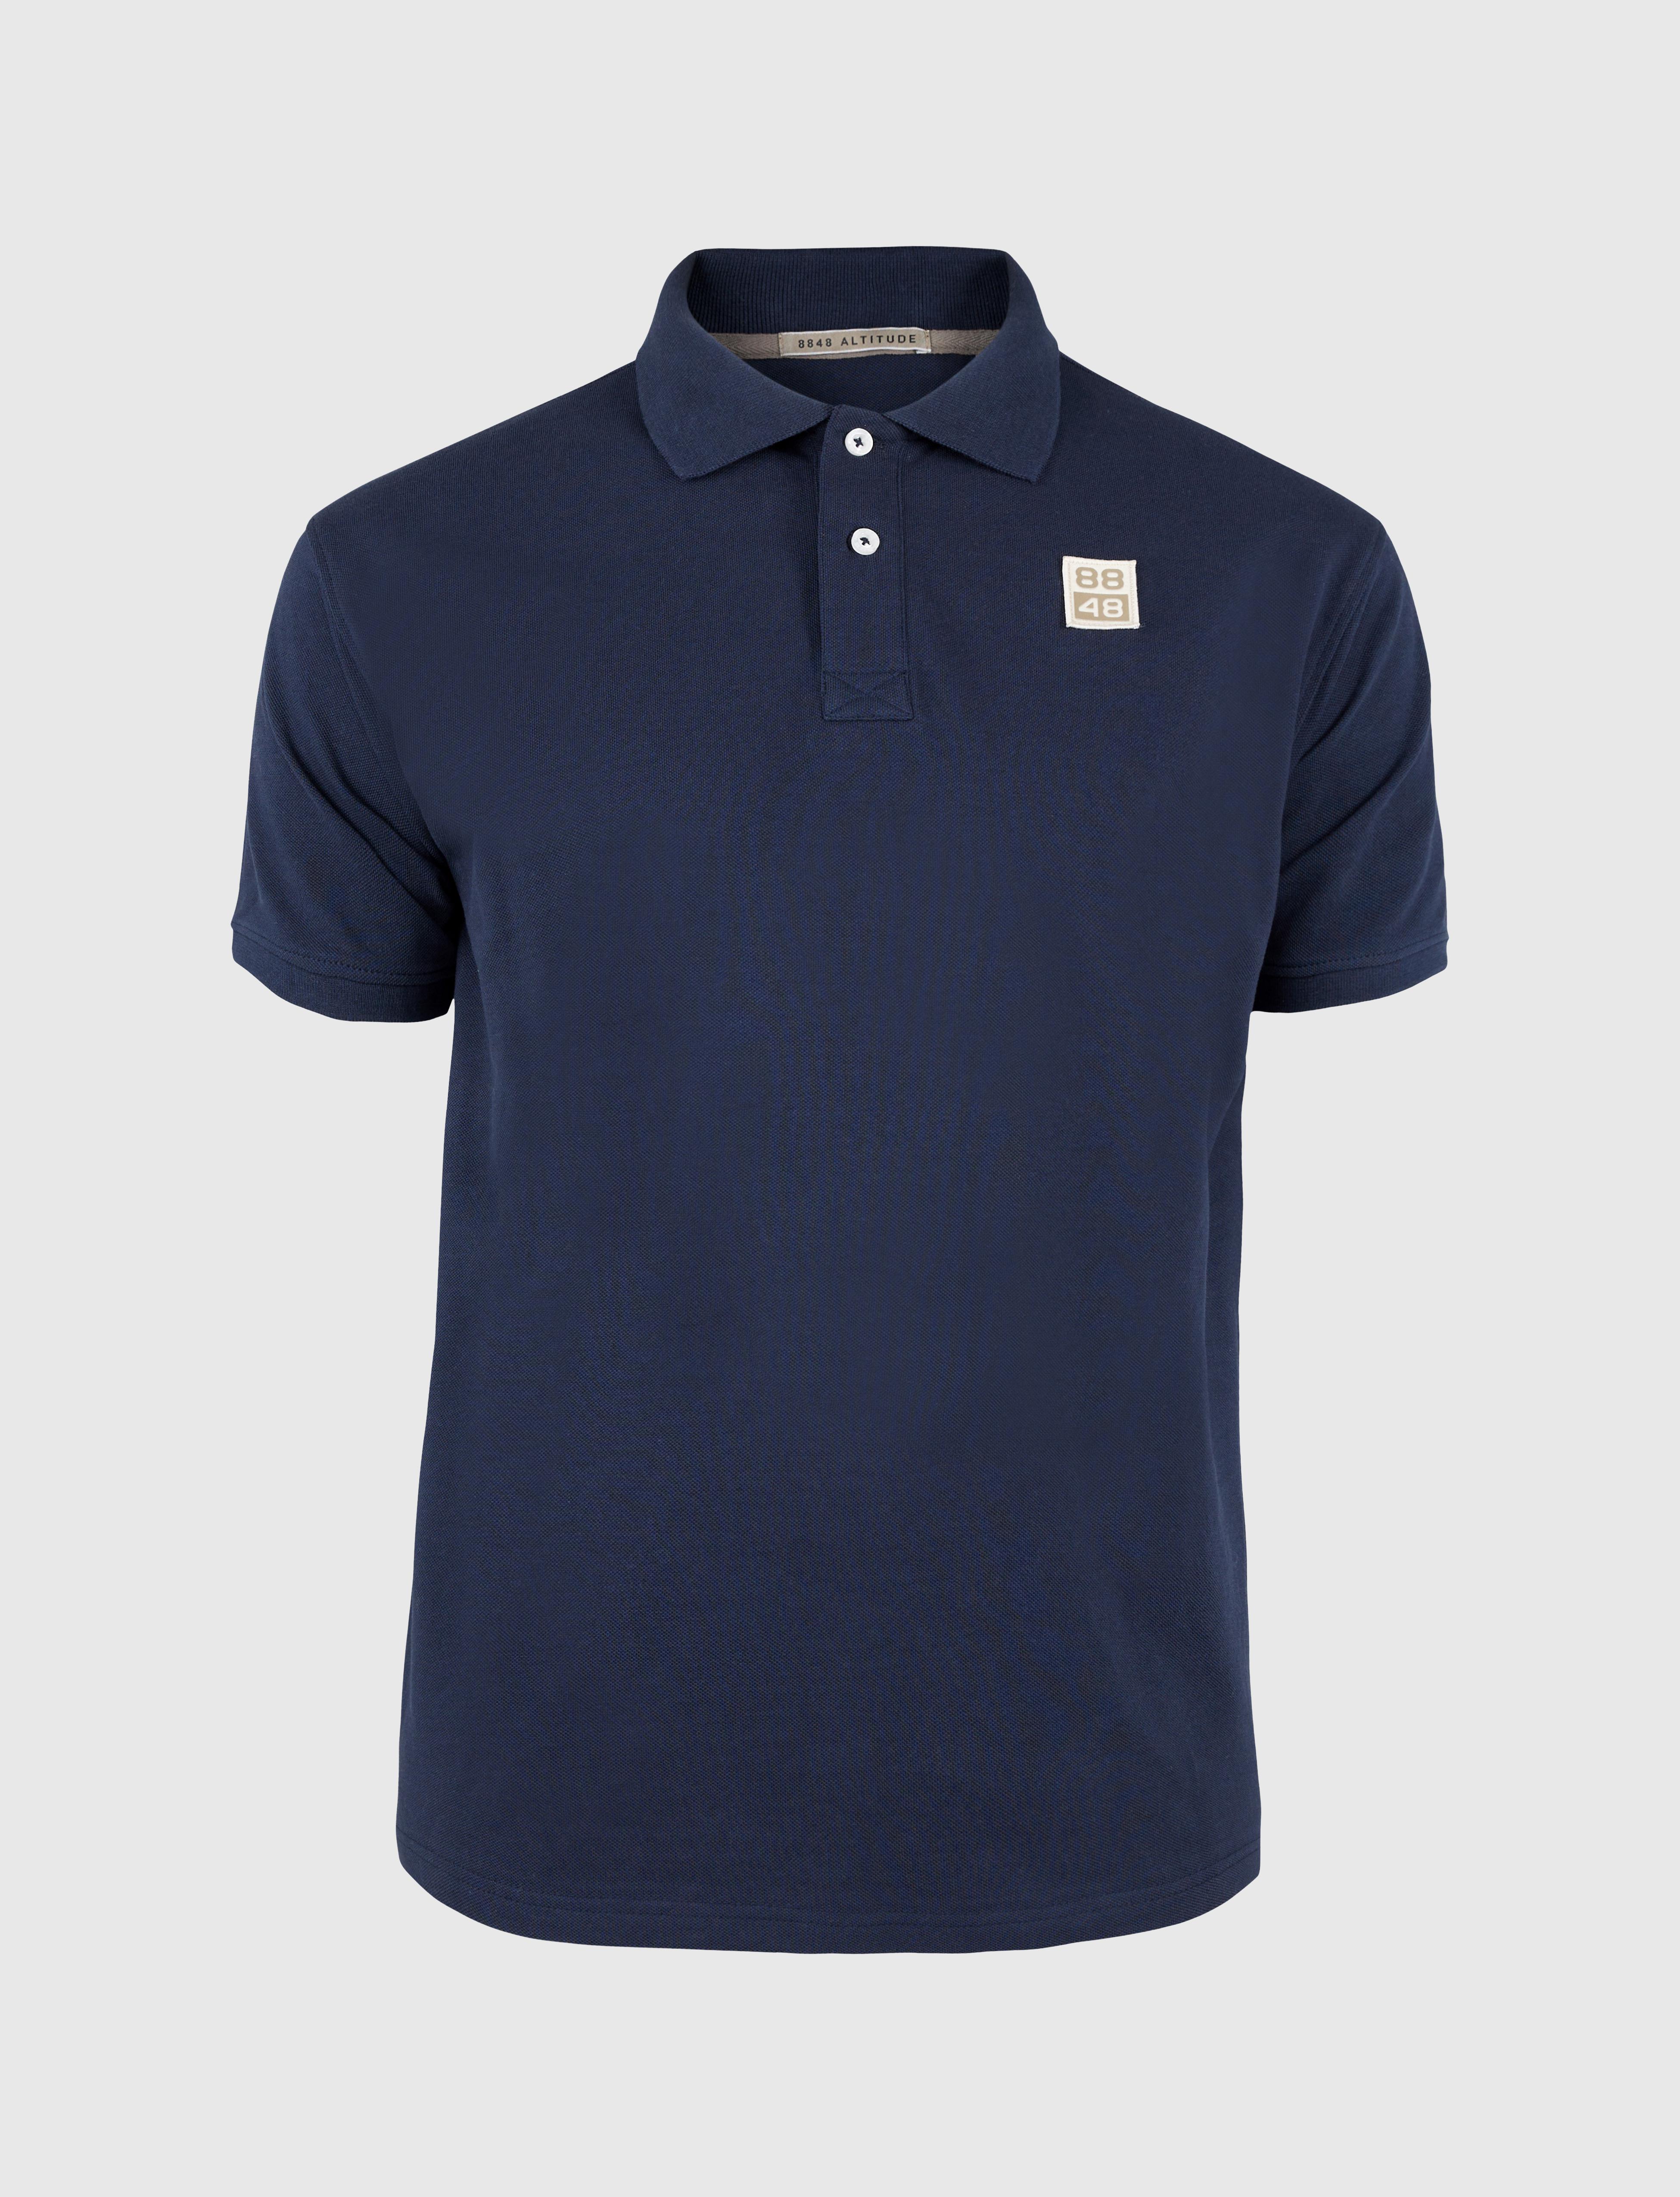 88 Logo Polo Shirt Navy - Blue polo shirt men